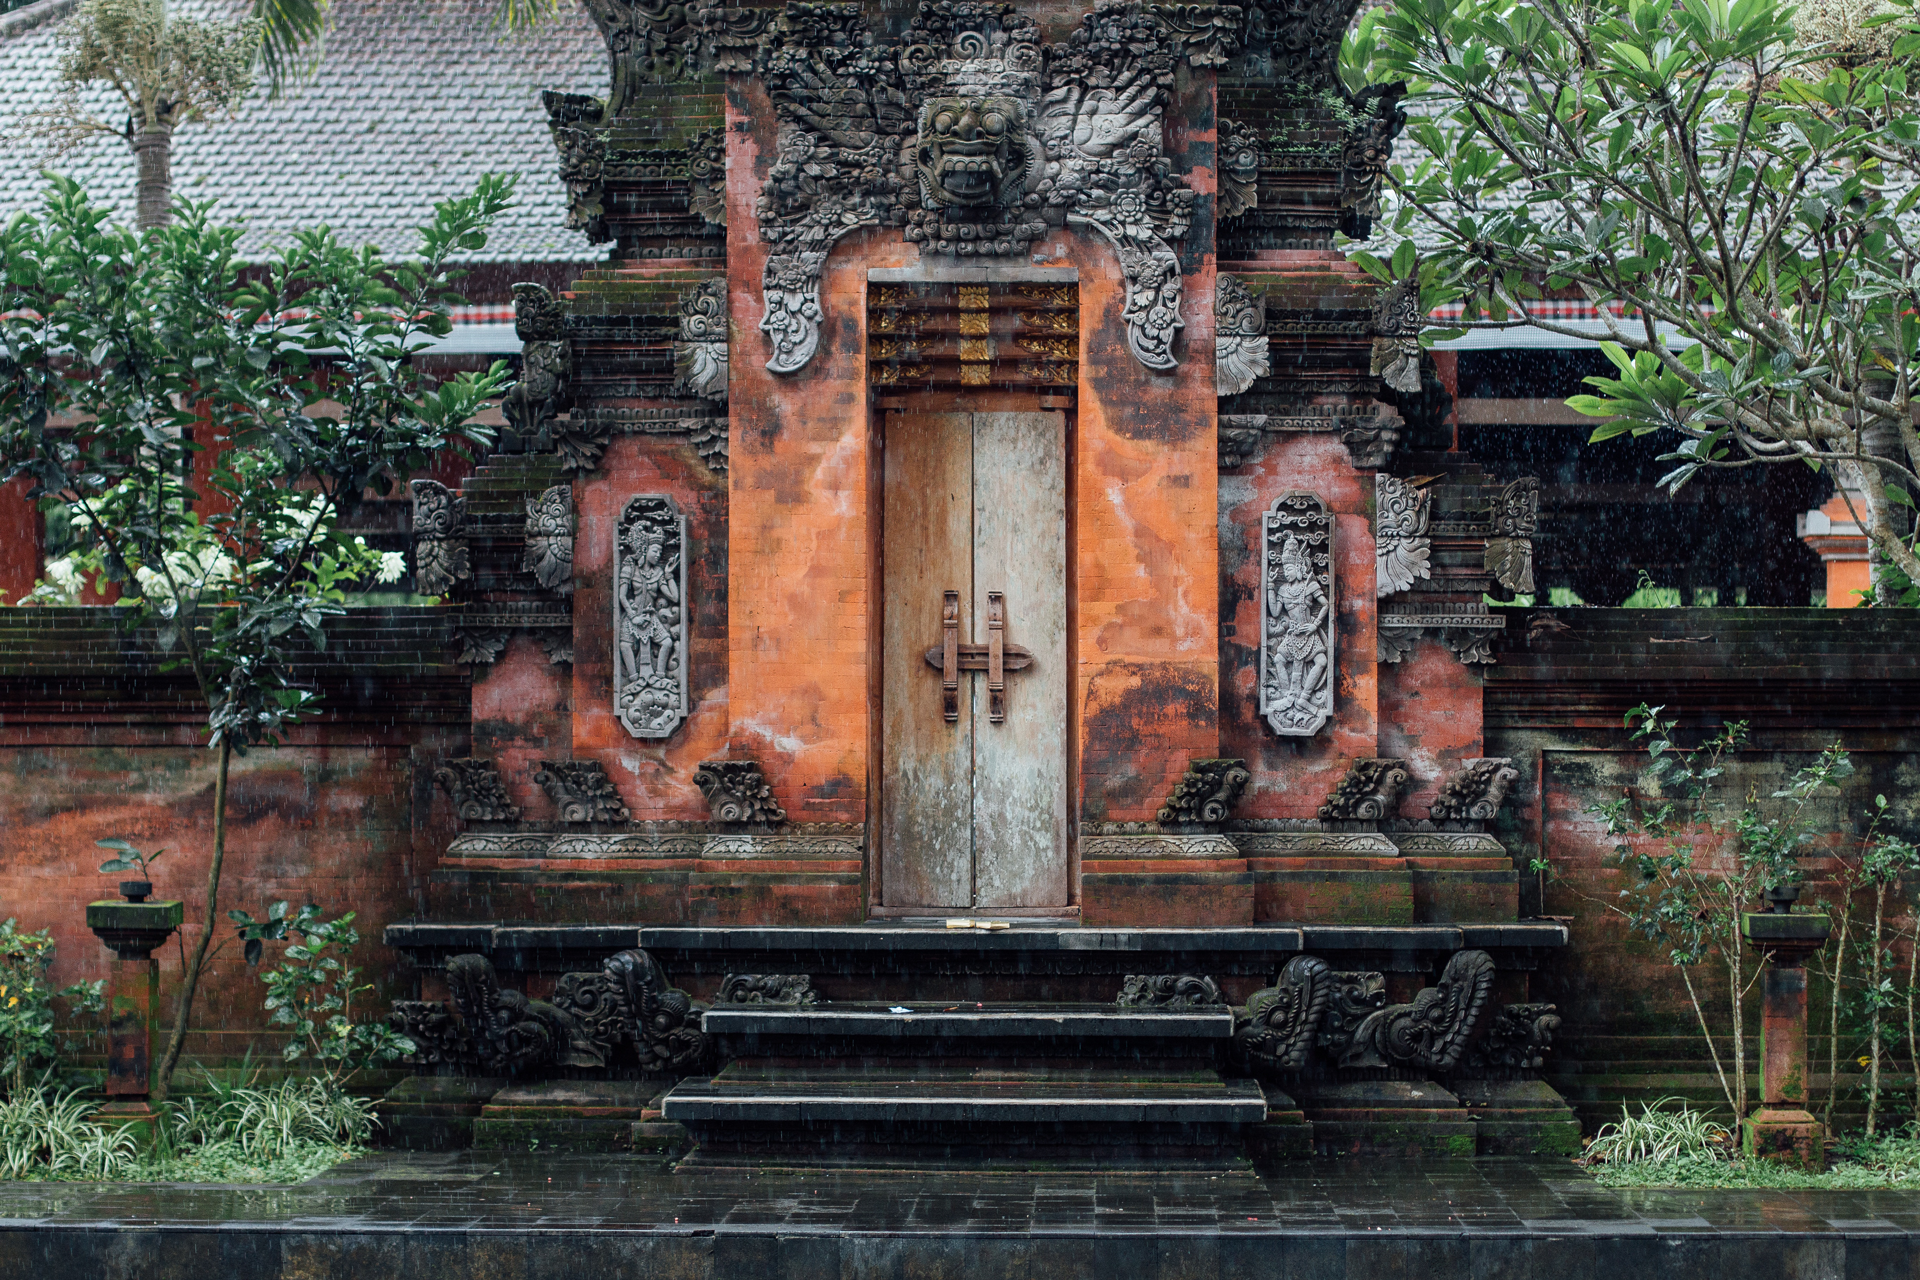 Decorative Balinese temple door.